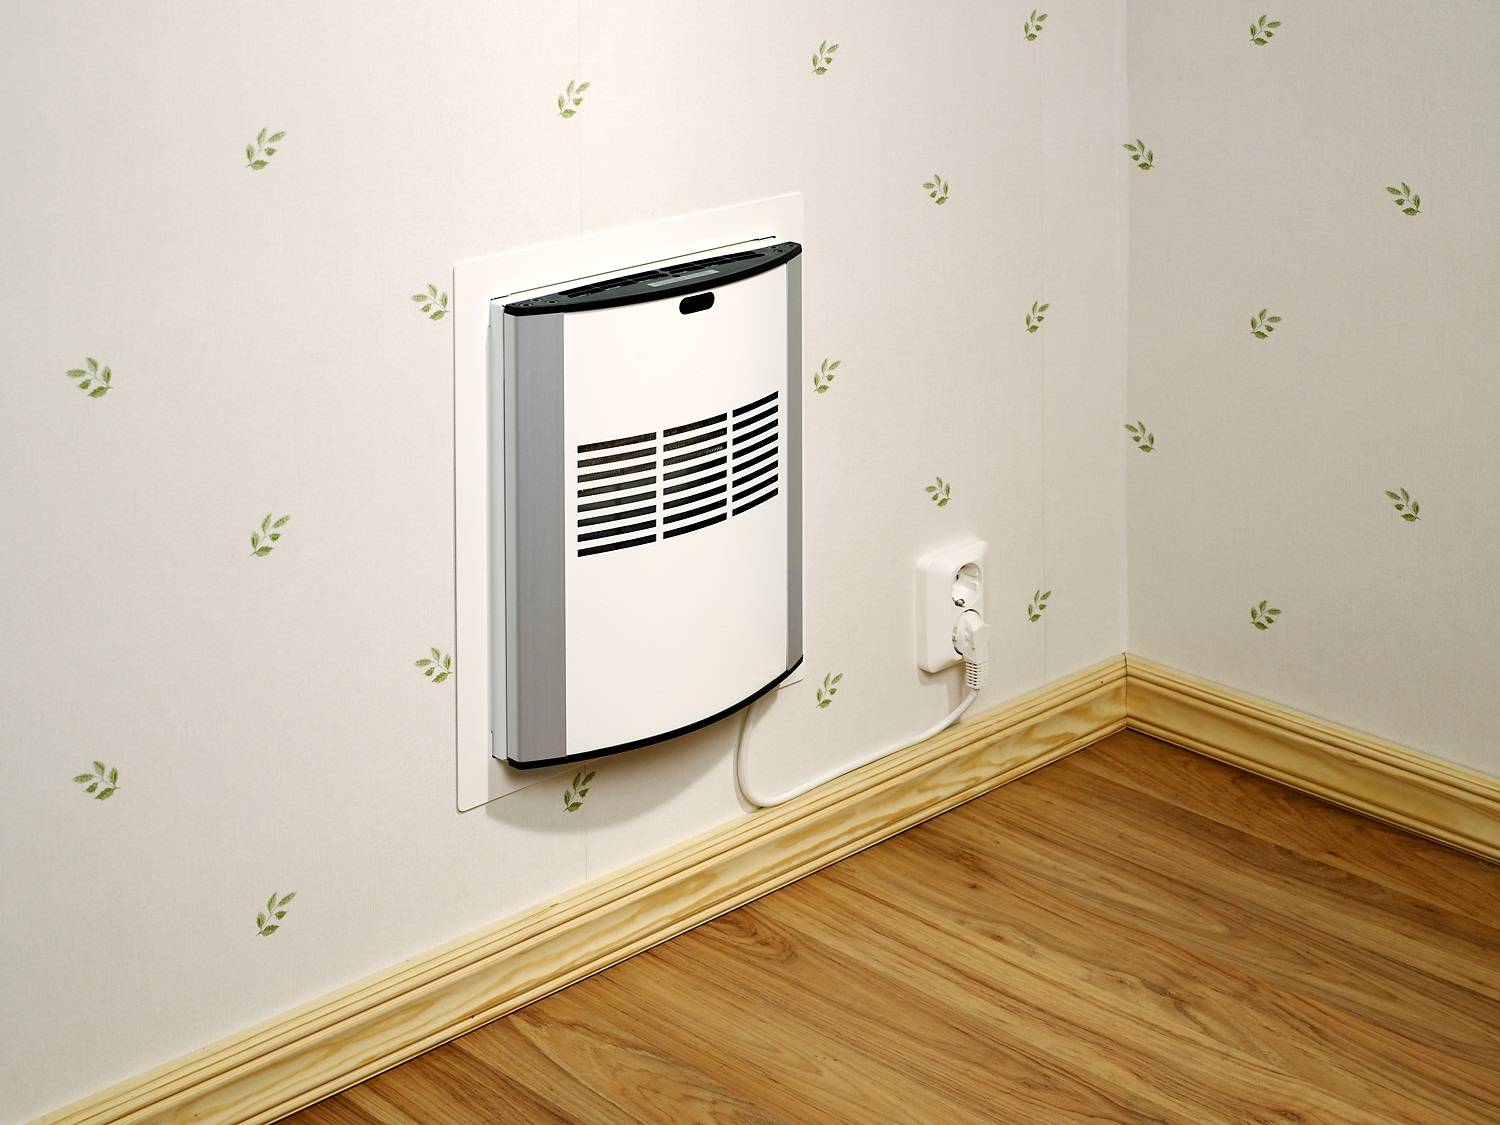 Подогрев приточной вентиляции в квартире: как выбрать и установить нагреватель воздуха на приточку